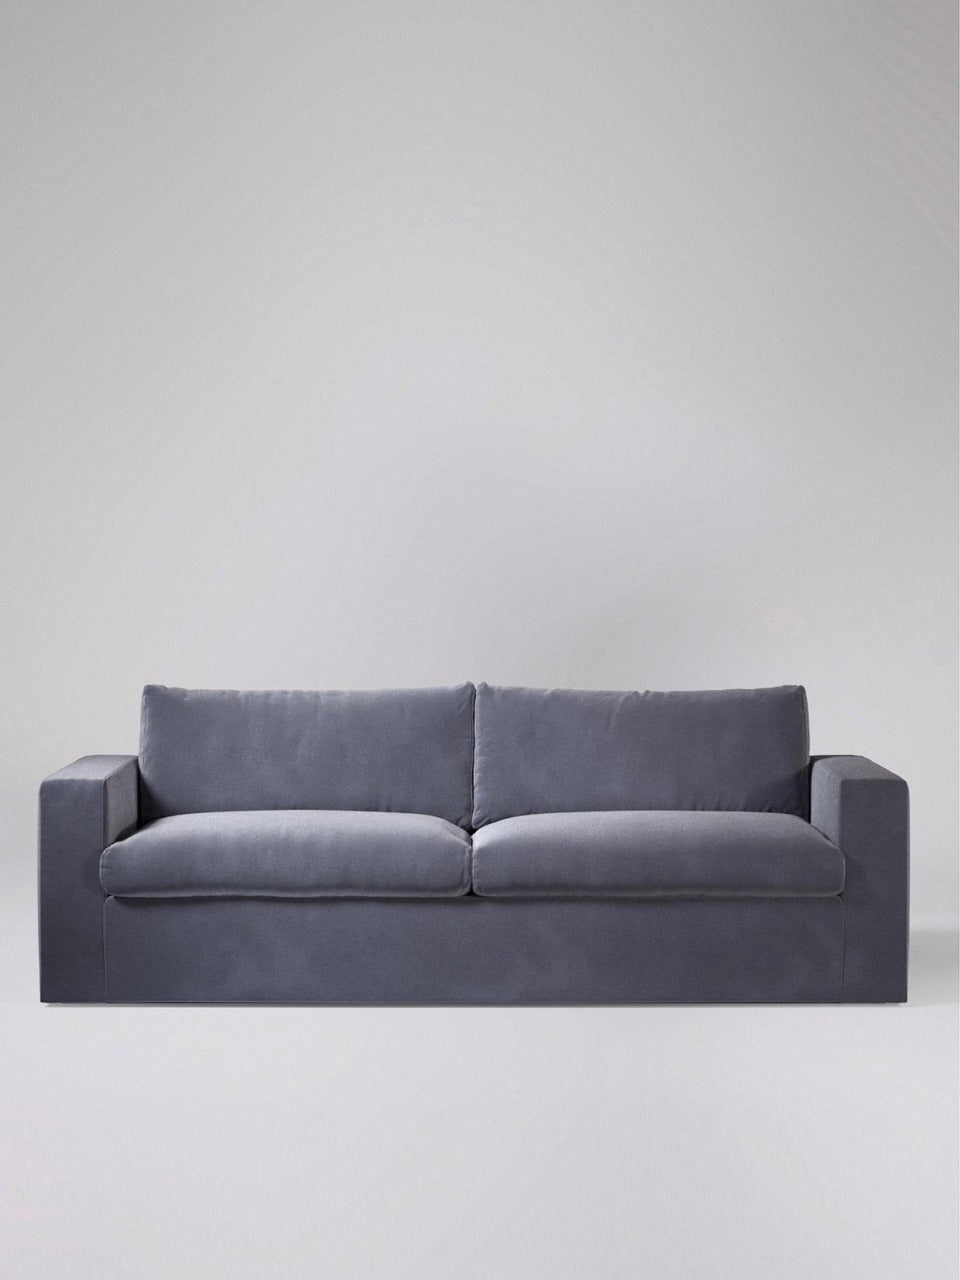 3 Seater Sofa Set:- Ultra Fabric Sofa Set